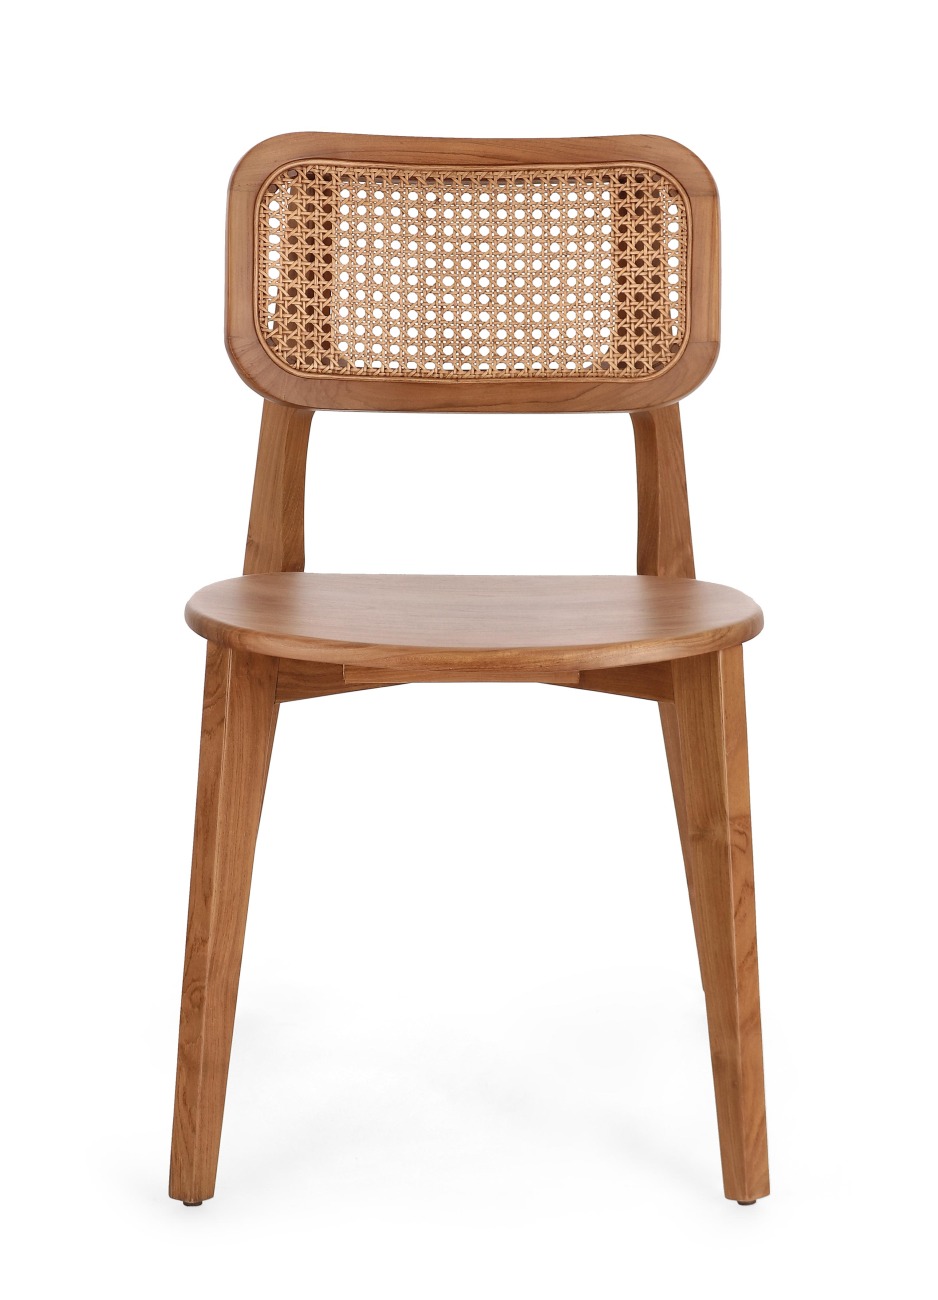 Der Esszimmerstuhl Abby überzeugt mit seinem modernen Stil. Gefertigt wurde er aus Teakholz, welcher einen natürlichen Farbton besitzt. Die Rückenlehne ist aus Rattan und hat eine natürliche Farbe. Der Stuhl besitzt eine Sitzhöhe von 46 cm.